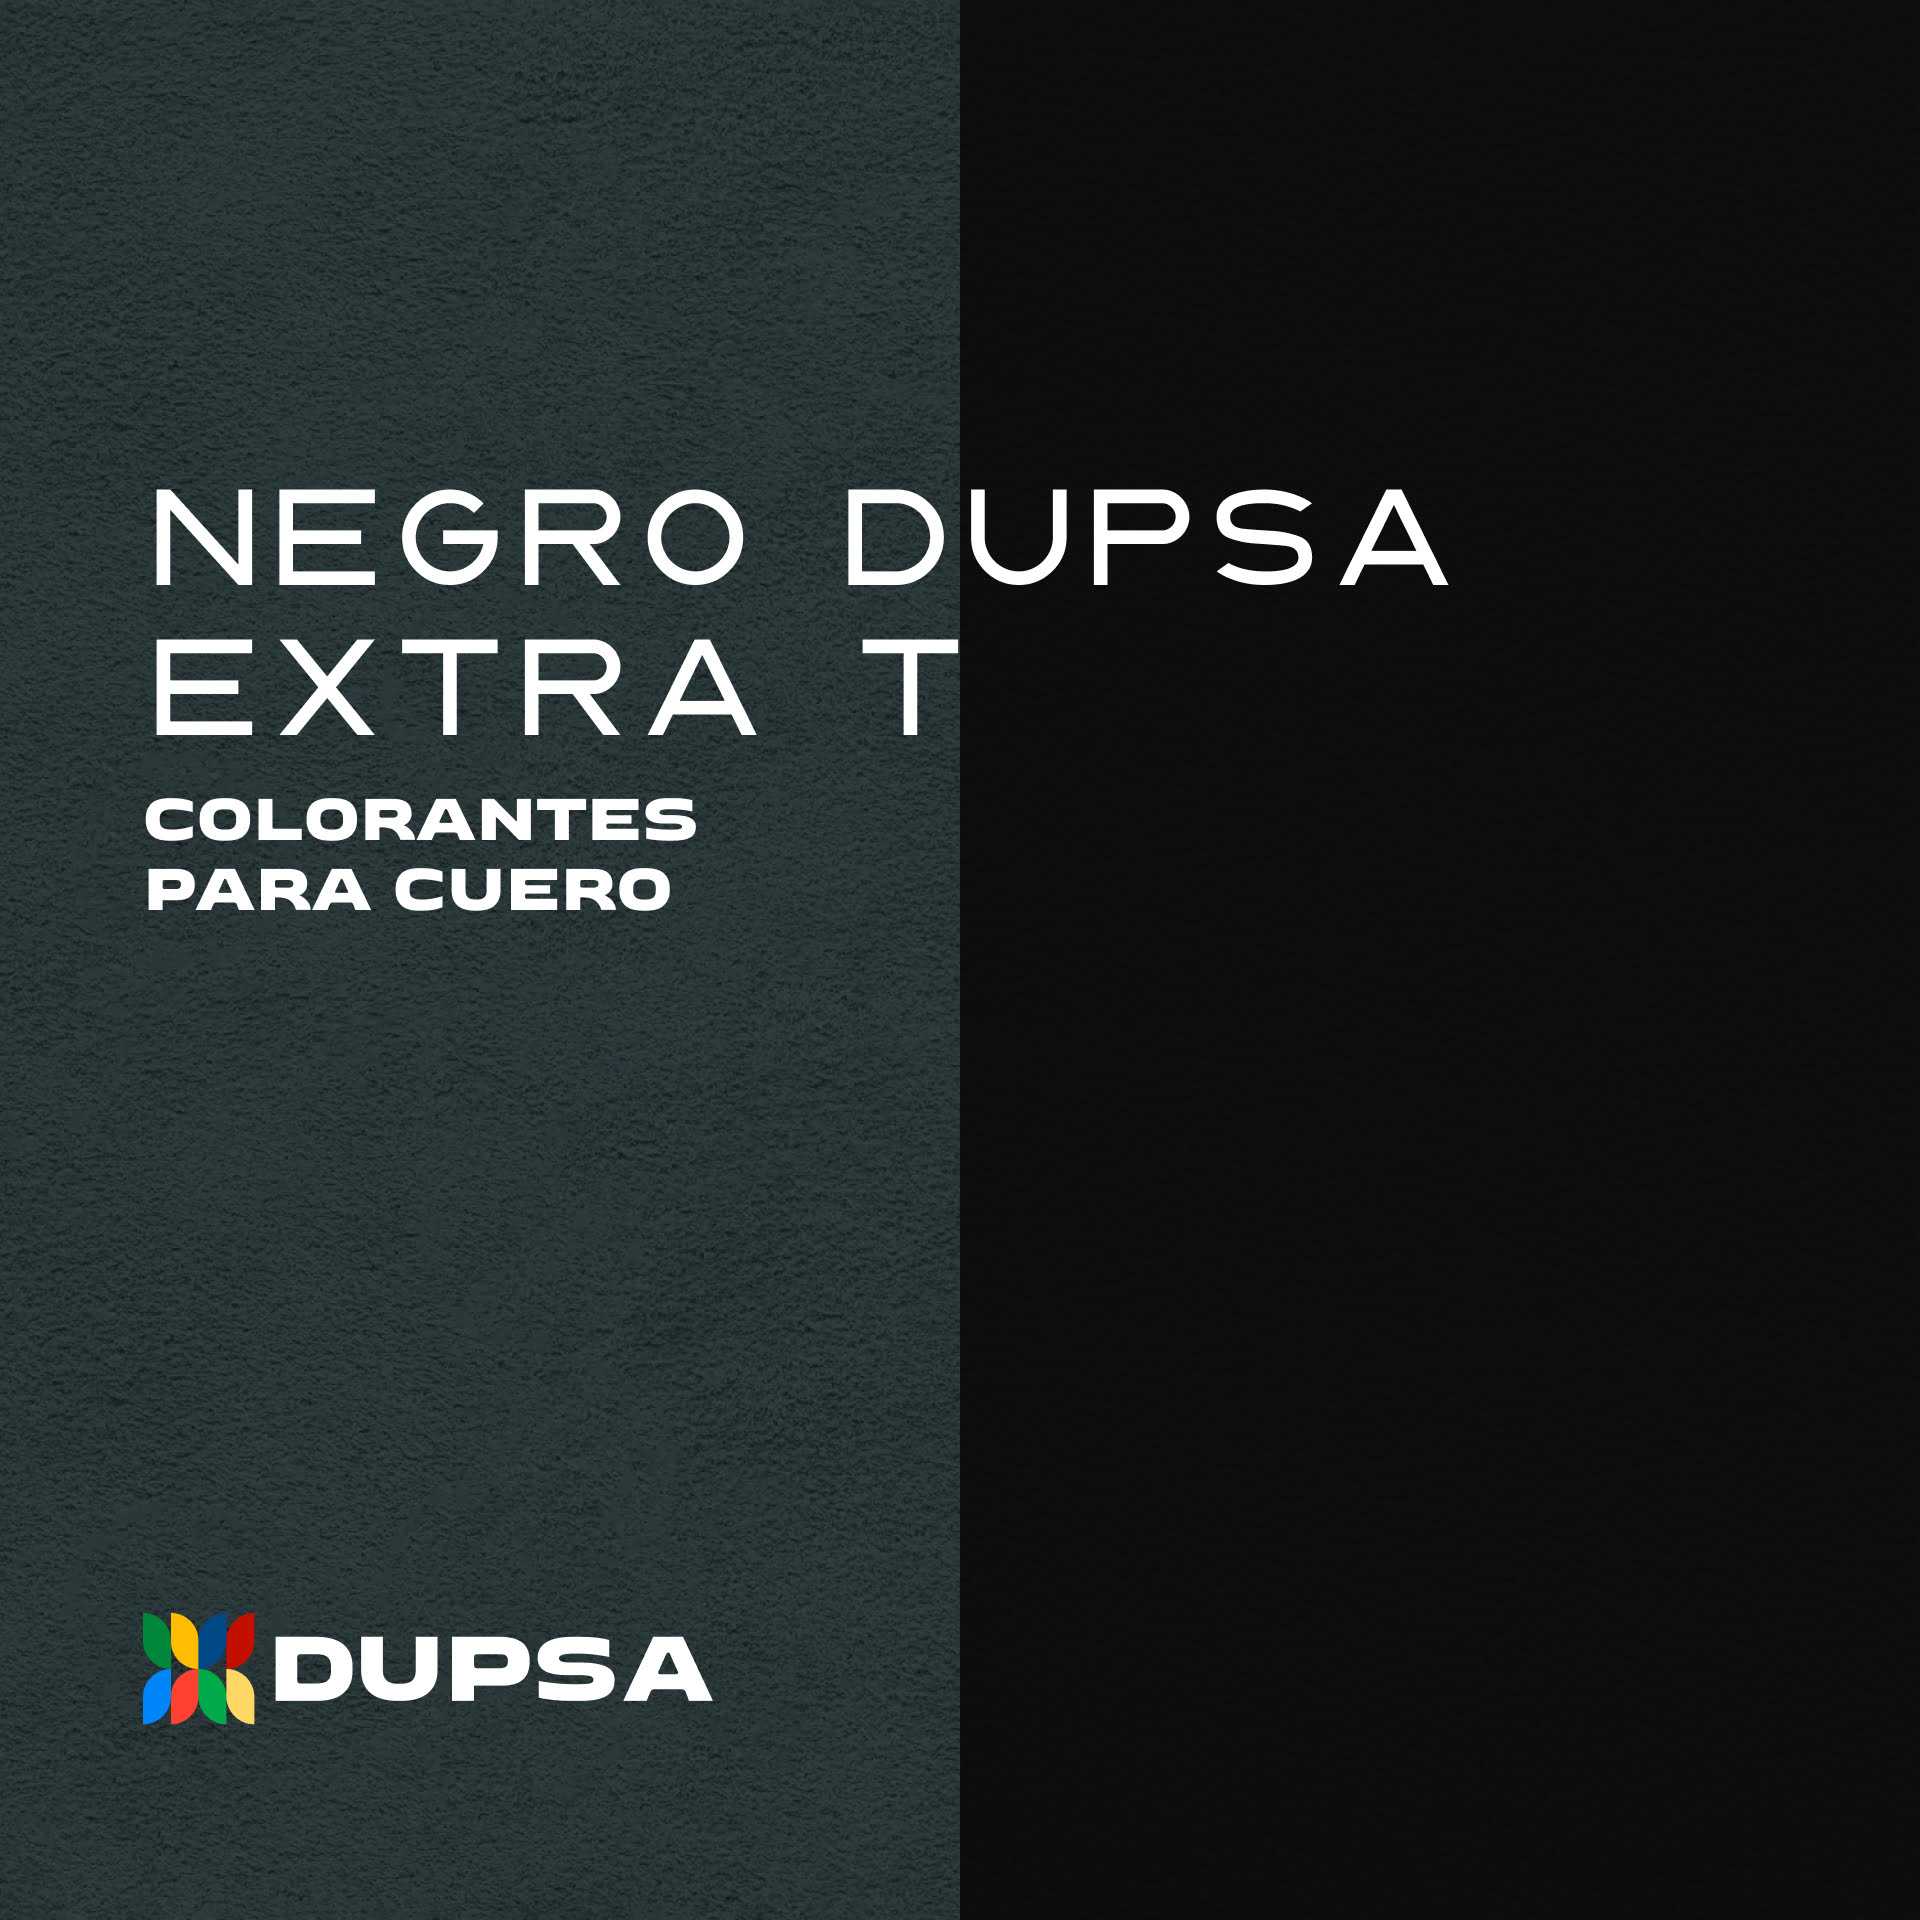 qd-ad-cc- Negro Dupsa Extra T 2